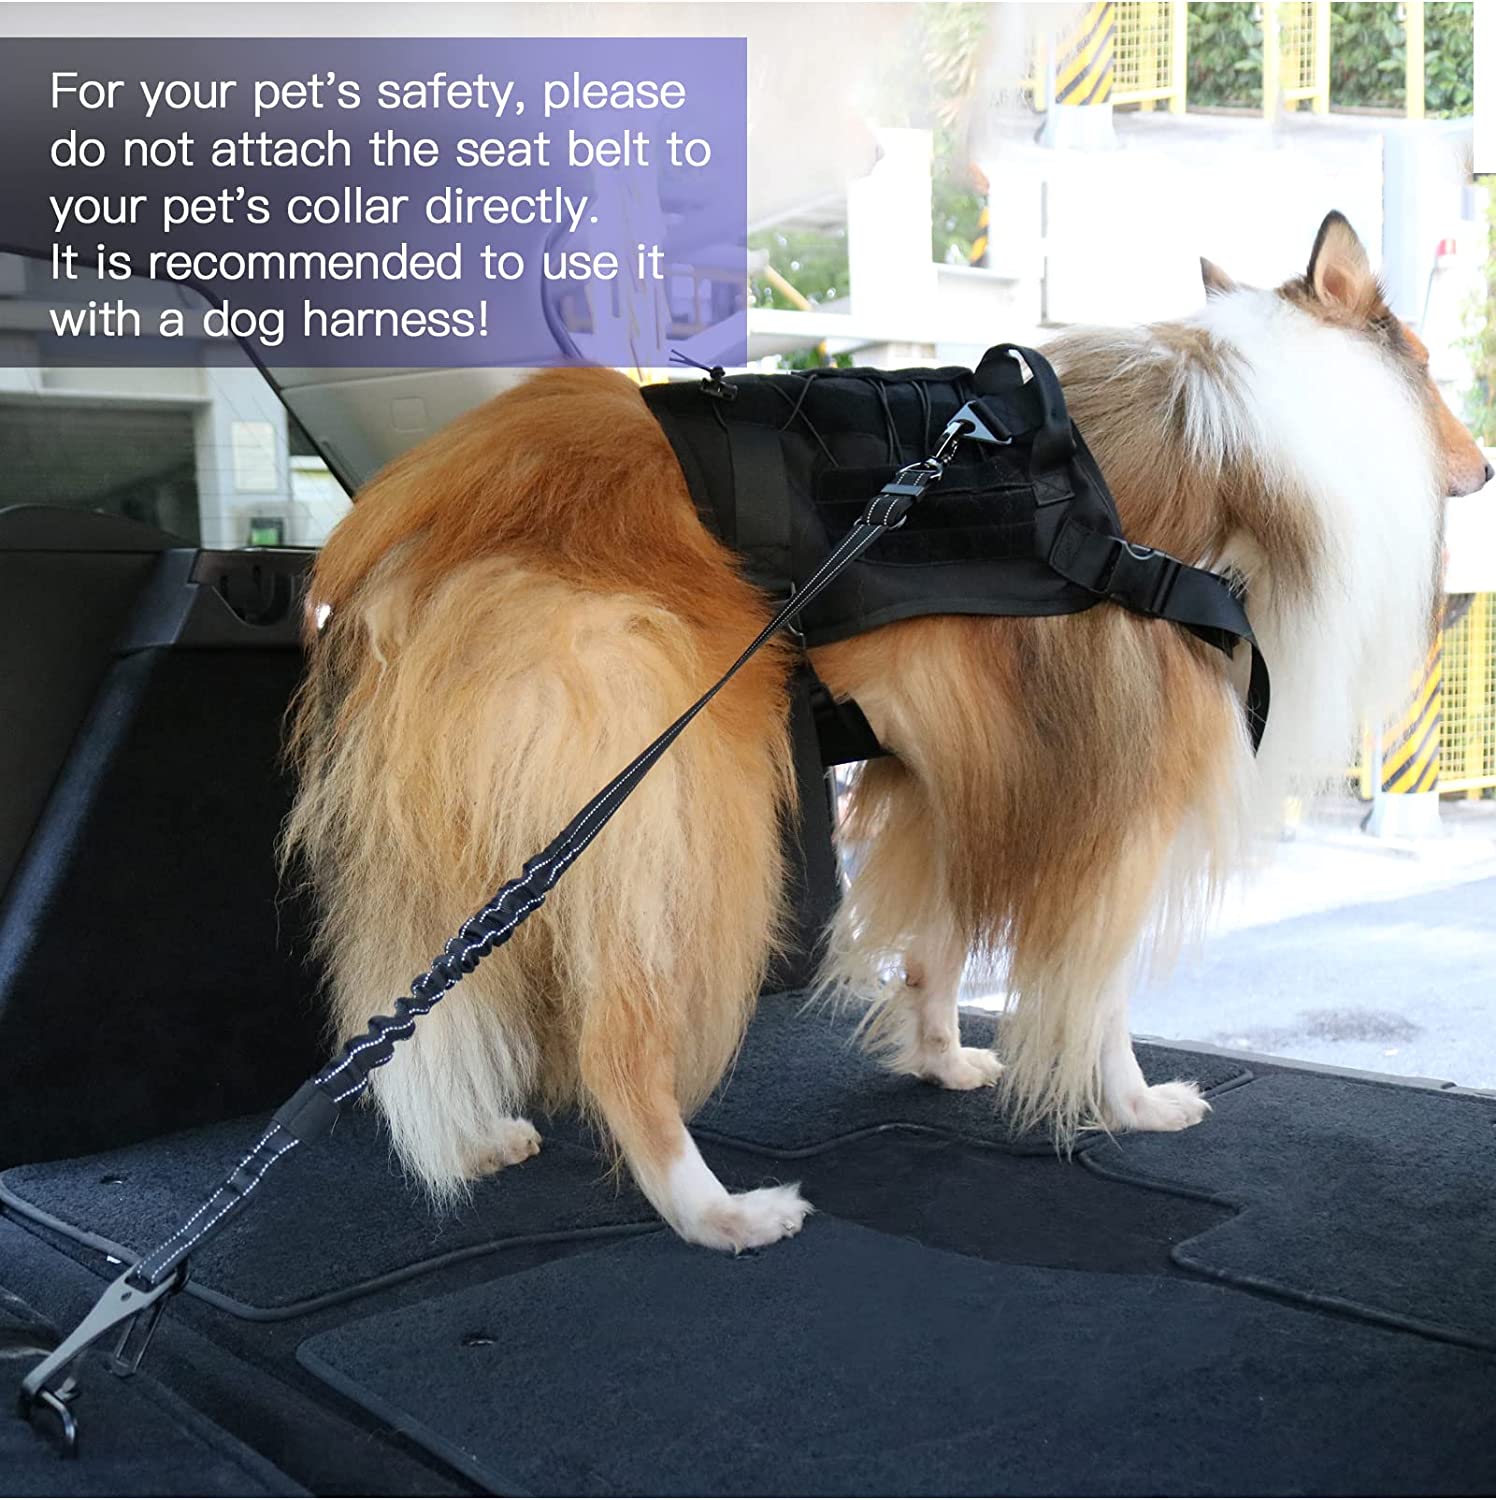  کمربند ایمنی مهار سگ AUBELL از بانداژ با کیفیت بالا ساخته شده است، خاصیت ارتجاعی قوی می تواند سگ ها را از ترمز ناگهانی یا چرخش های تند محافظت کند و می تواند از 25 اینچ تا 32 اینچ تنظیم شود